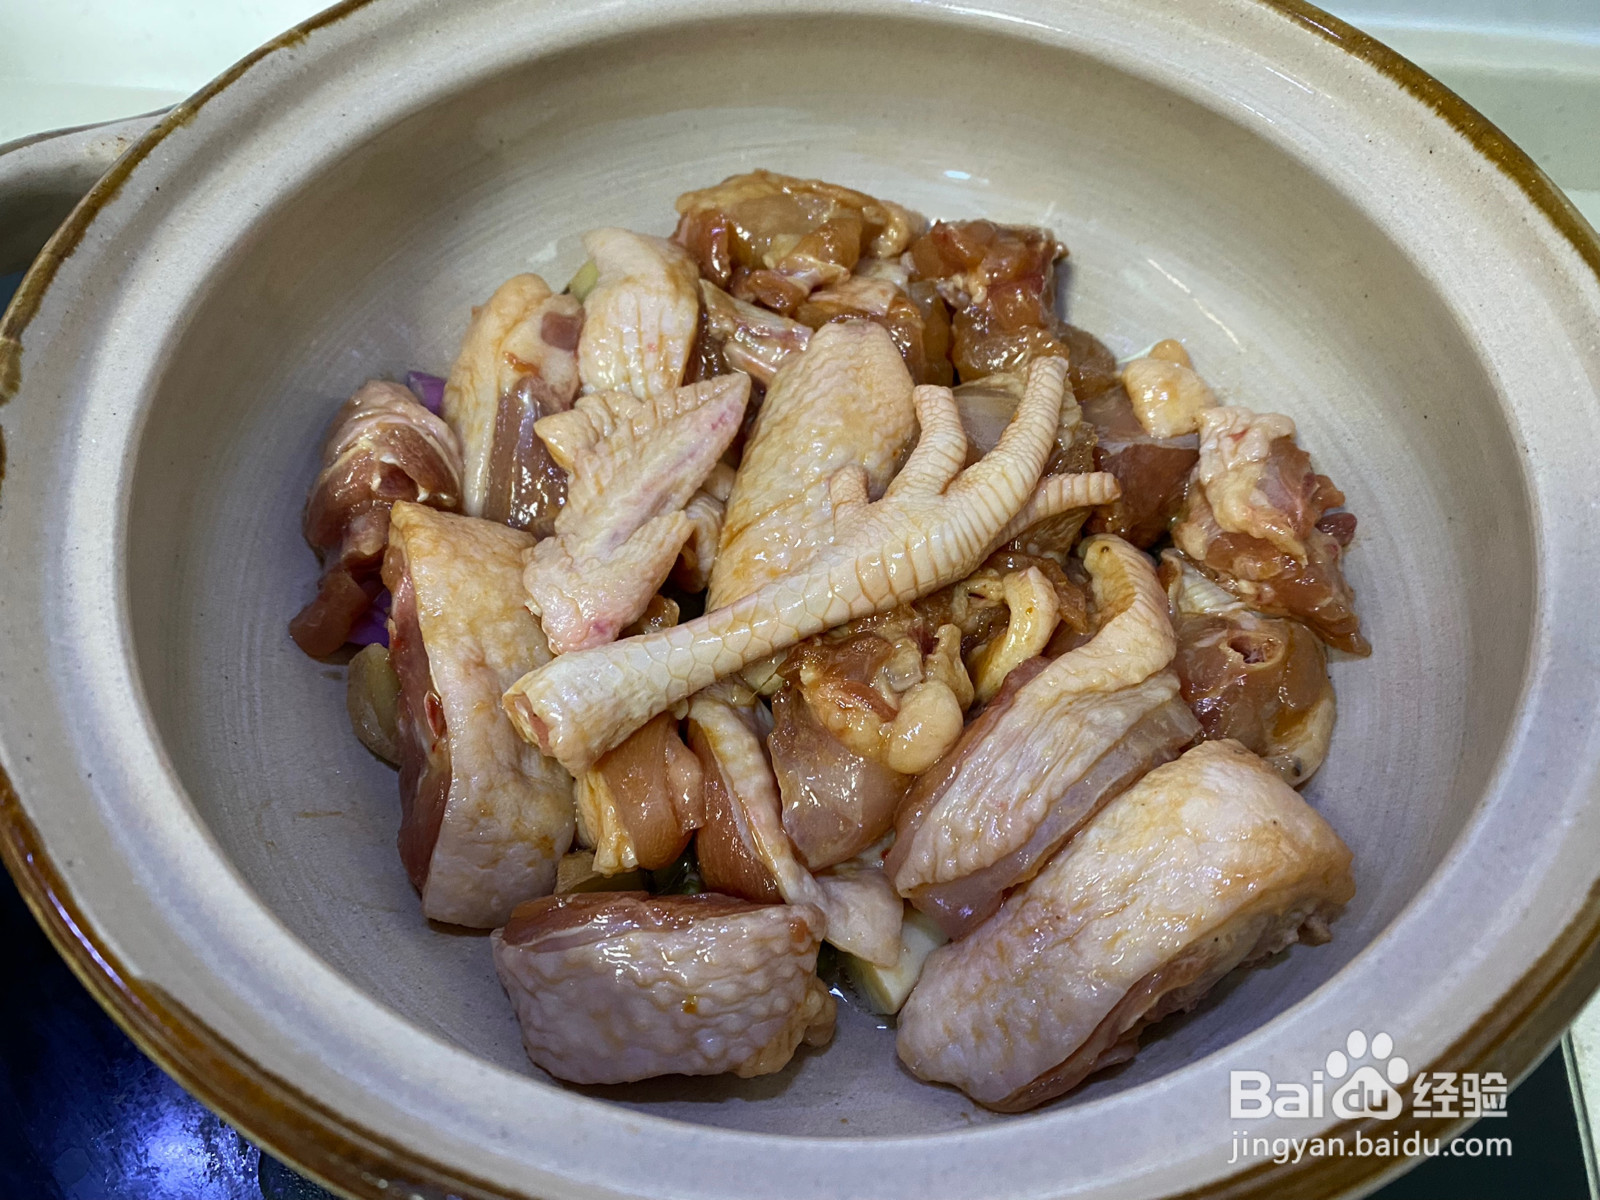 白贝鸡煲经典粤菜的做法